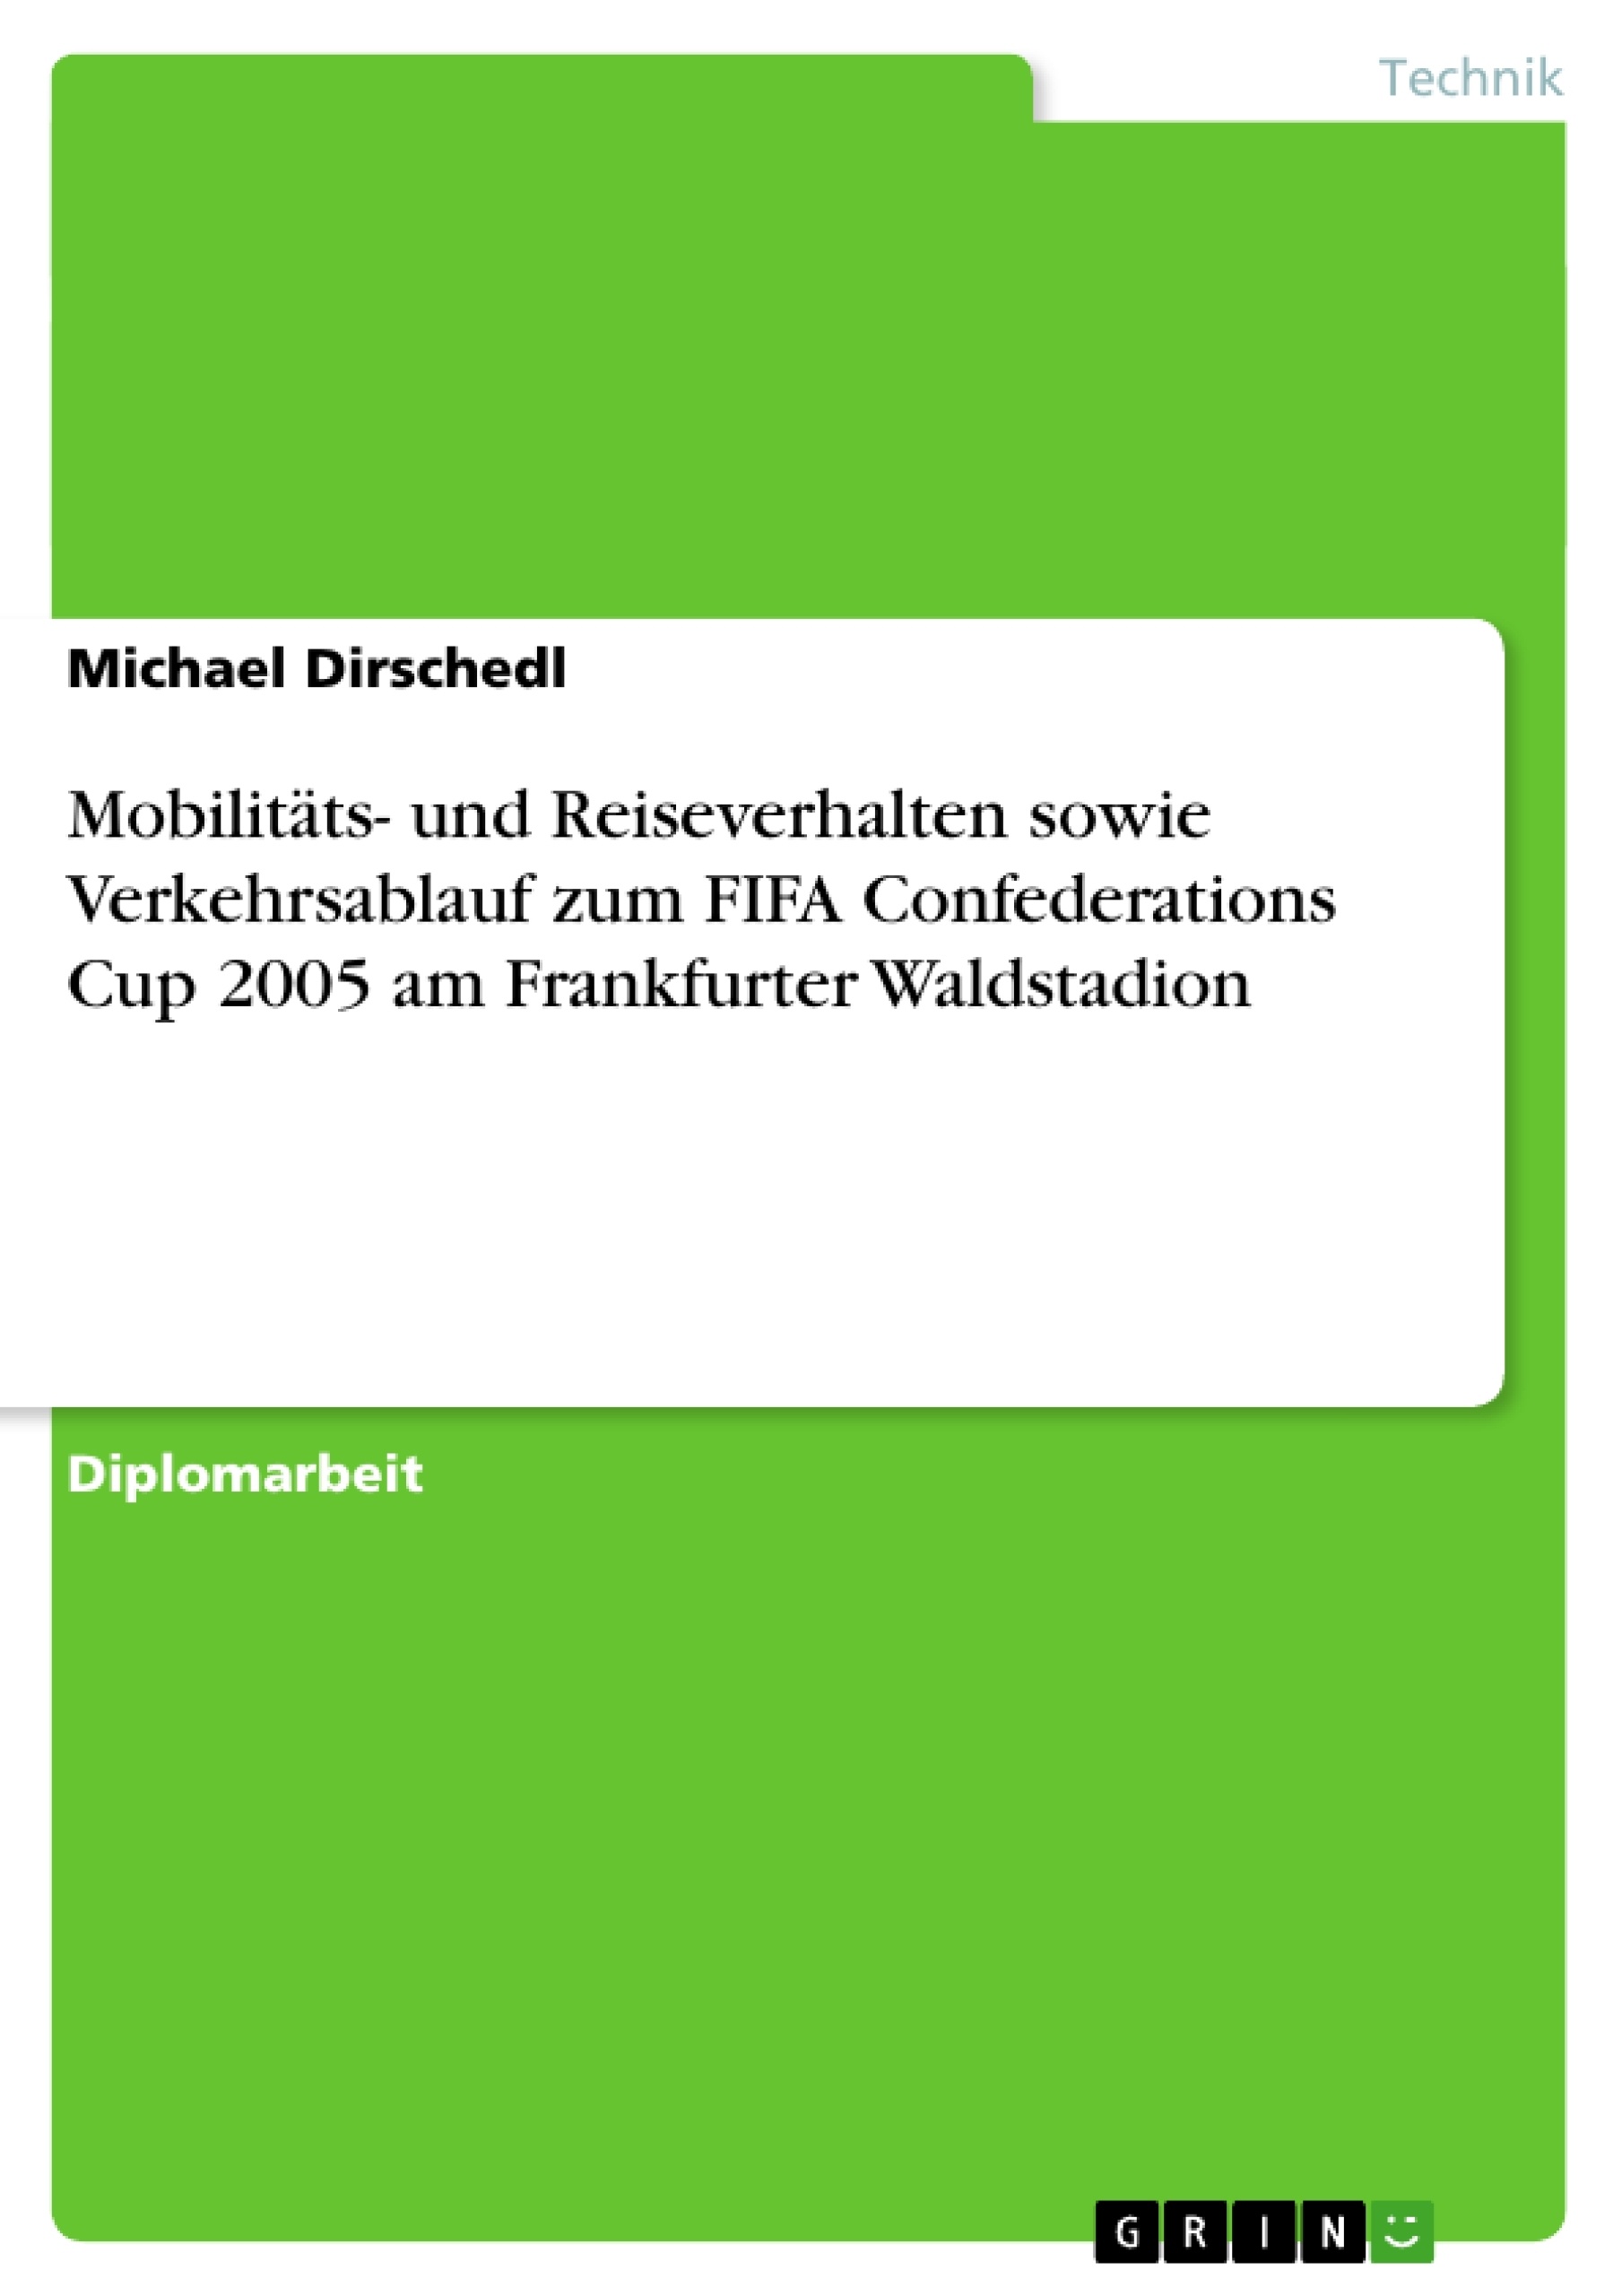 Title: Mobilitäts- und Reiseverhalten sowie Verkehrsablauf zum FIFA Confederations Cup 2005 am Frankfurter Waldstadion